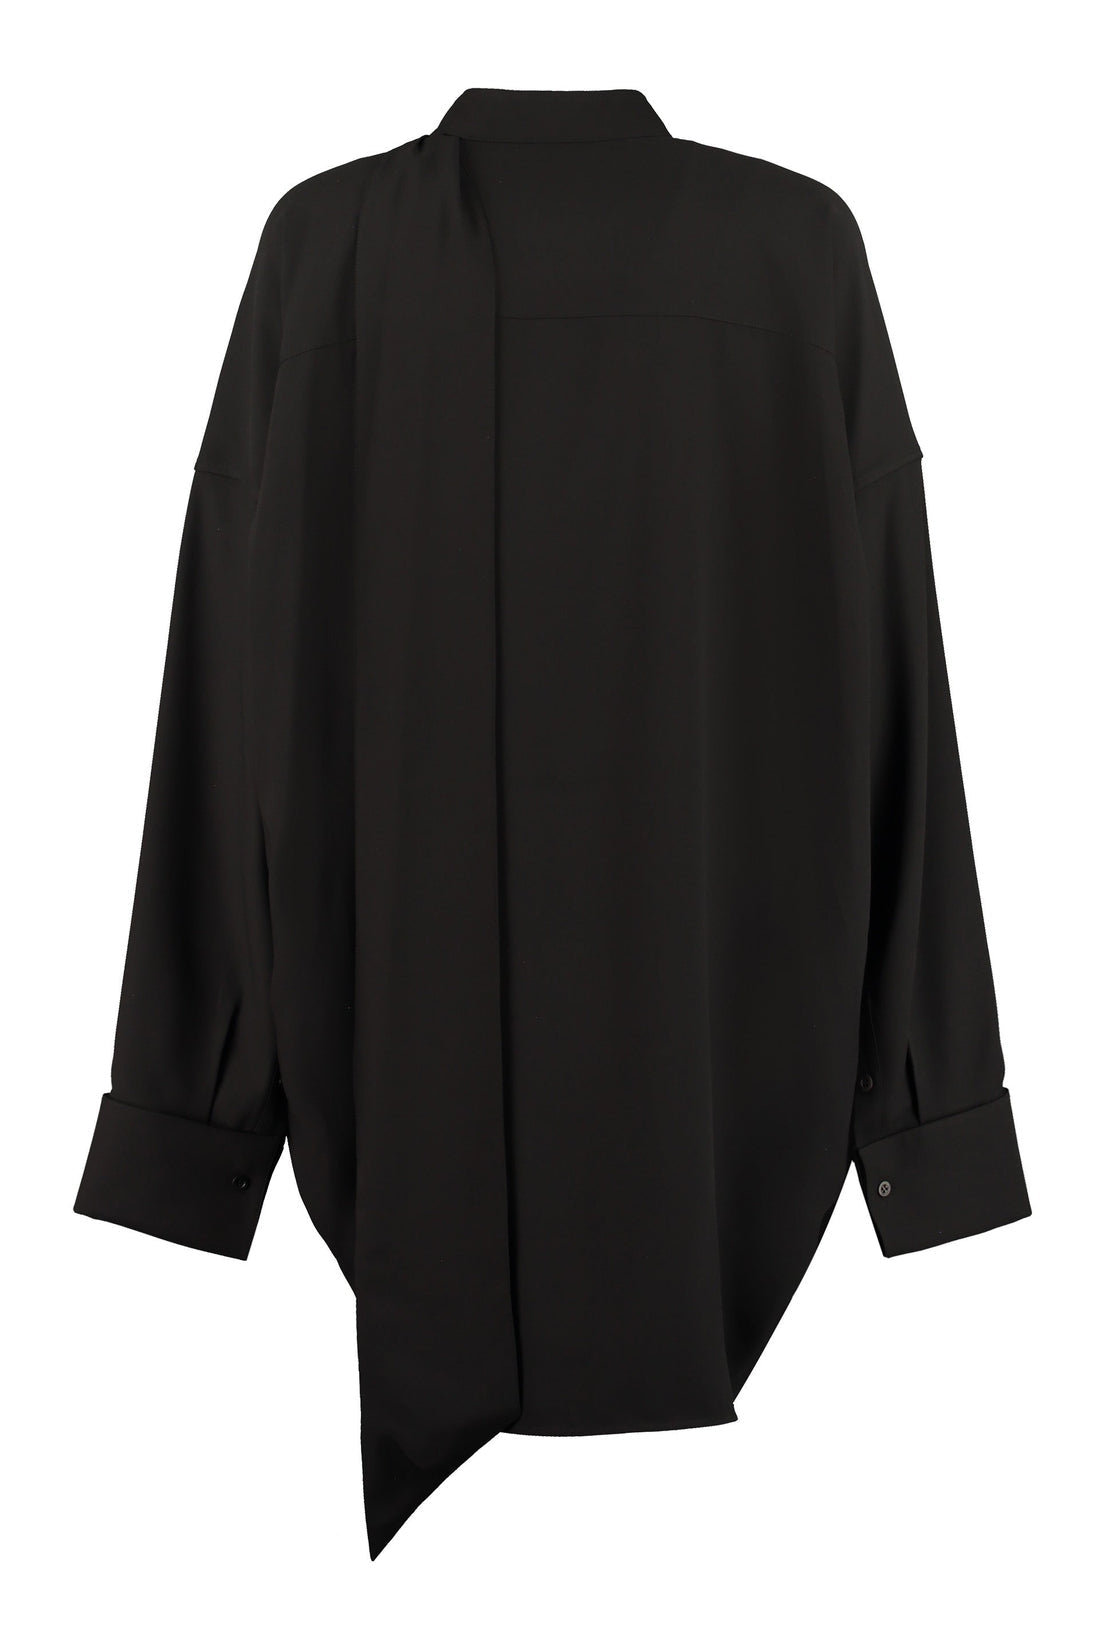 Balenciaga-OUTLET-SALE-Crêpe blouse-ARCHIVIST